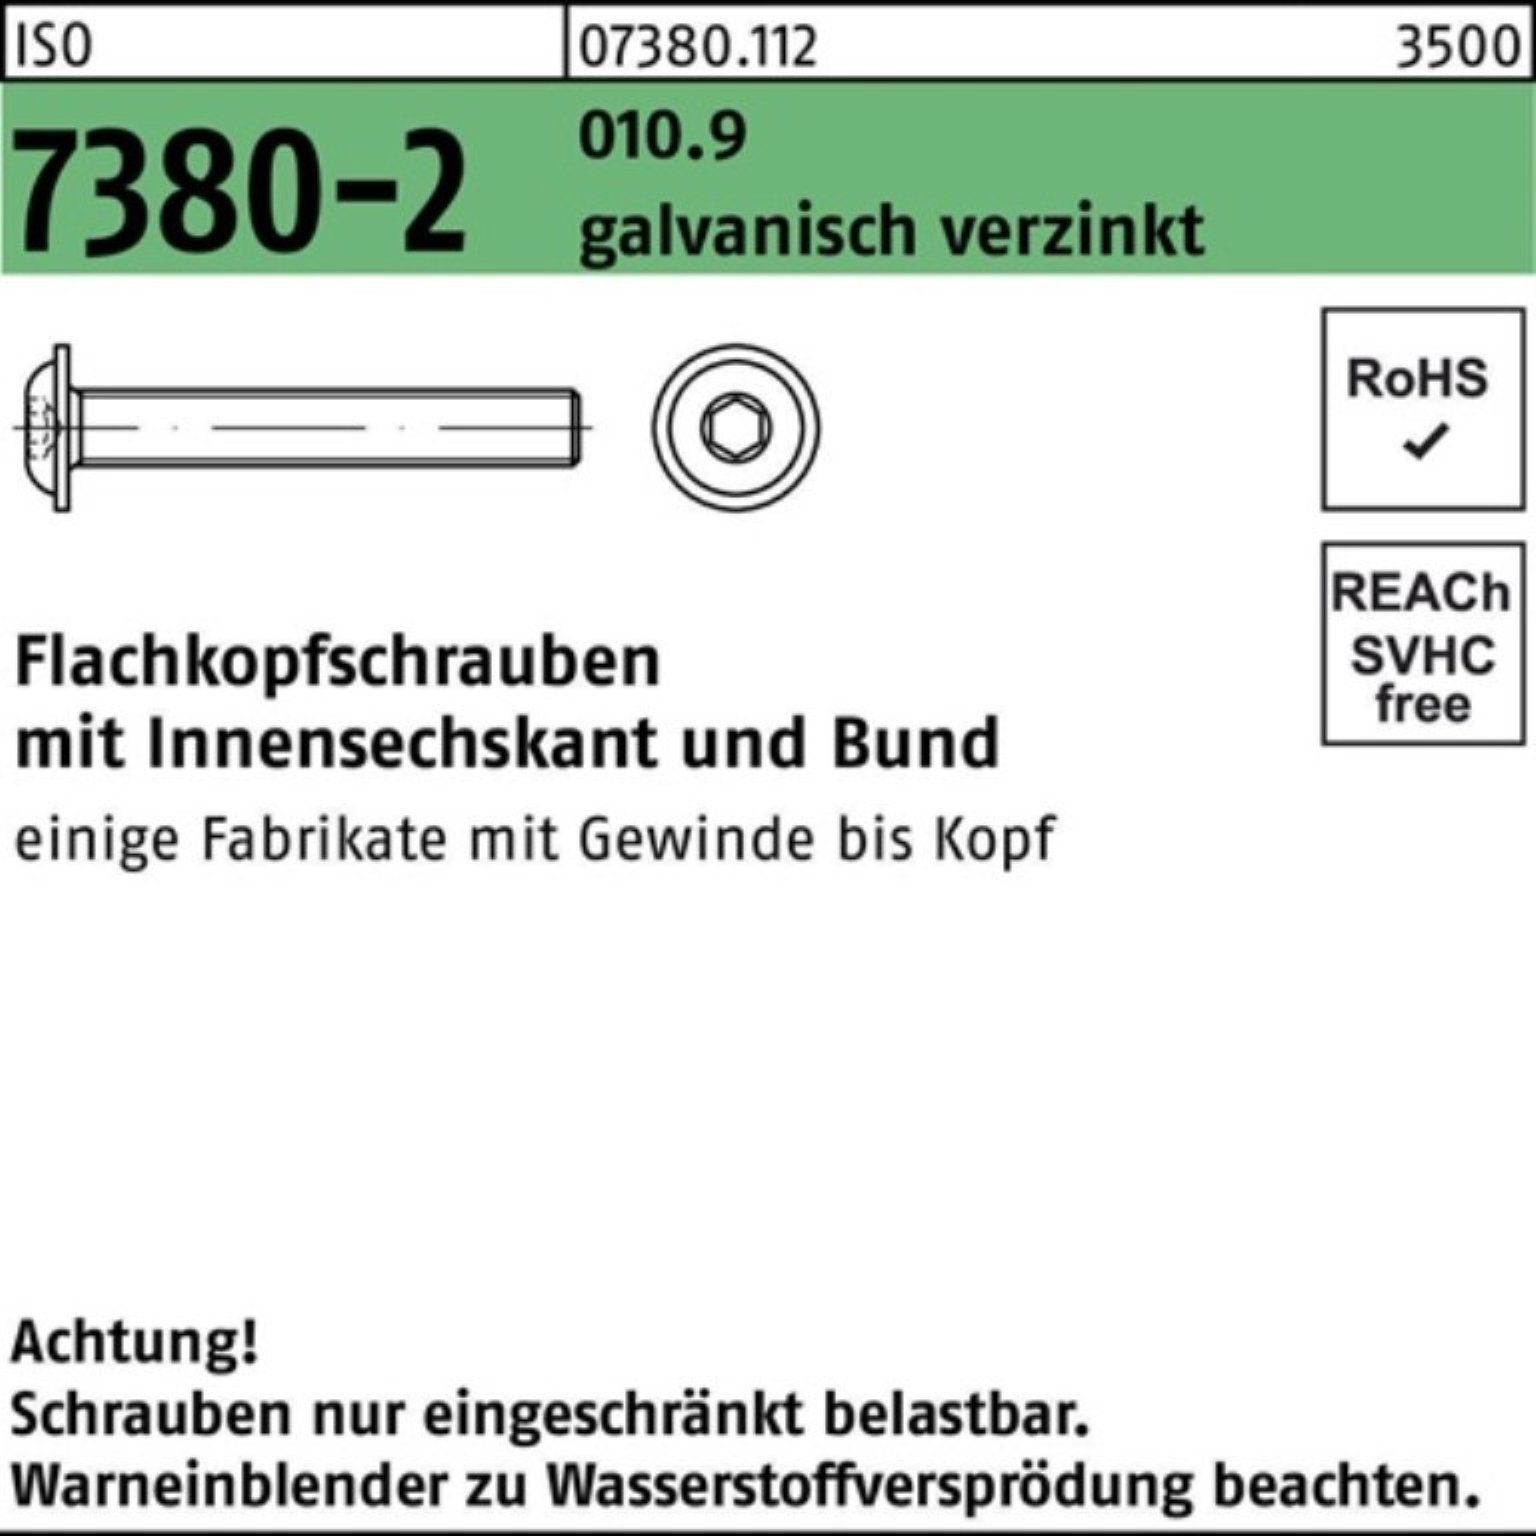 Reyher Schraube 100er Pack Flachkopfschraube 010.9 M12x25 Bund/Innen-6kt ISO ga 7380-2